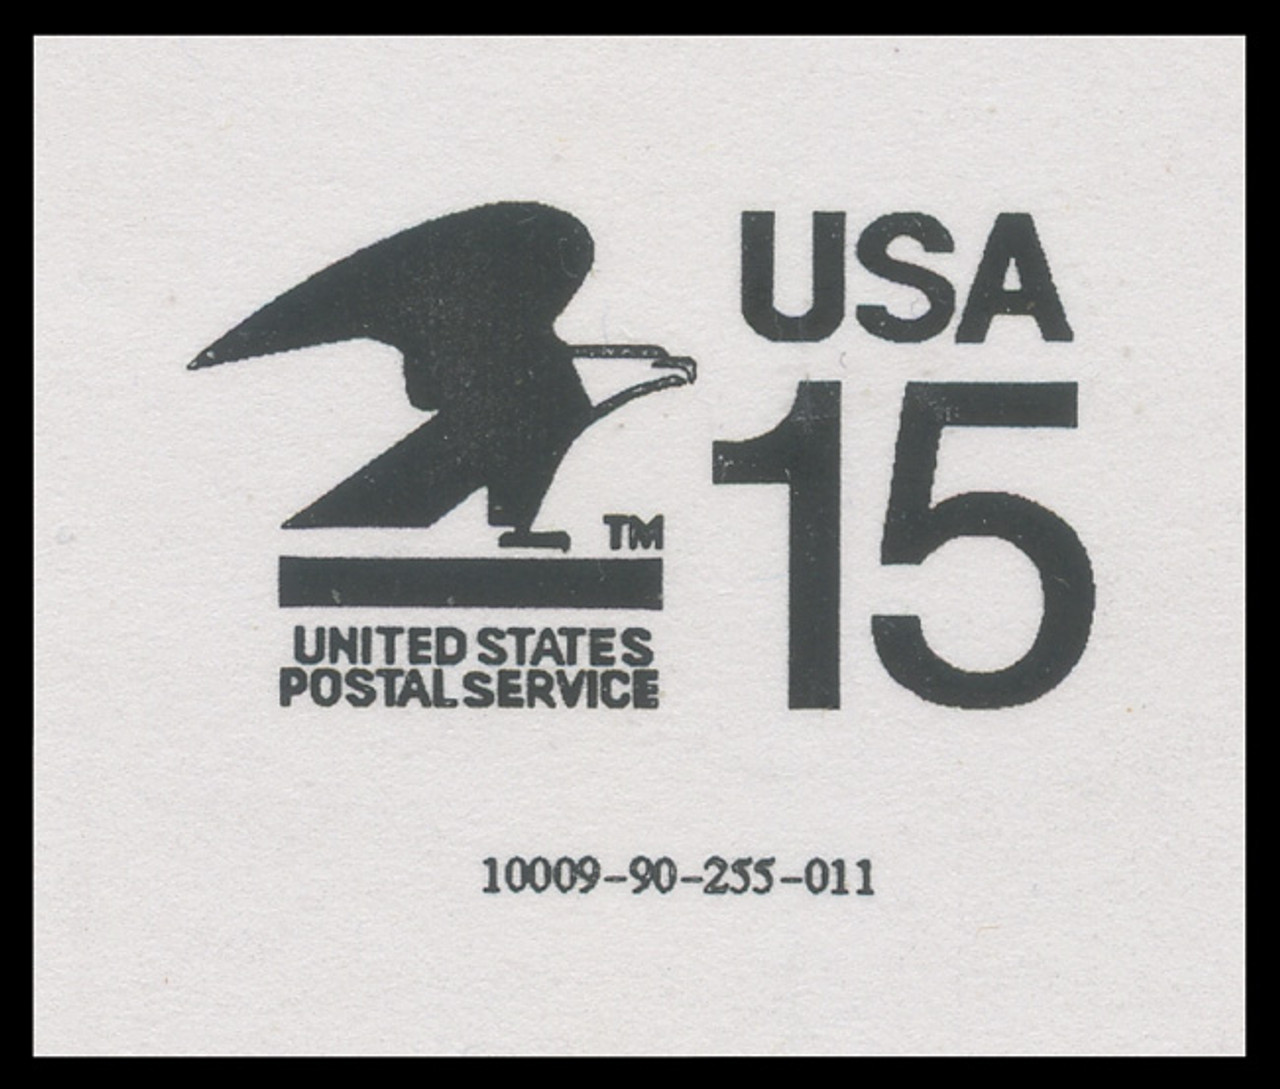 USA Scott # CVUX1, UPSS # PB1, Machine 10009 - Lincolnia P.O., Alexandria, VA